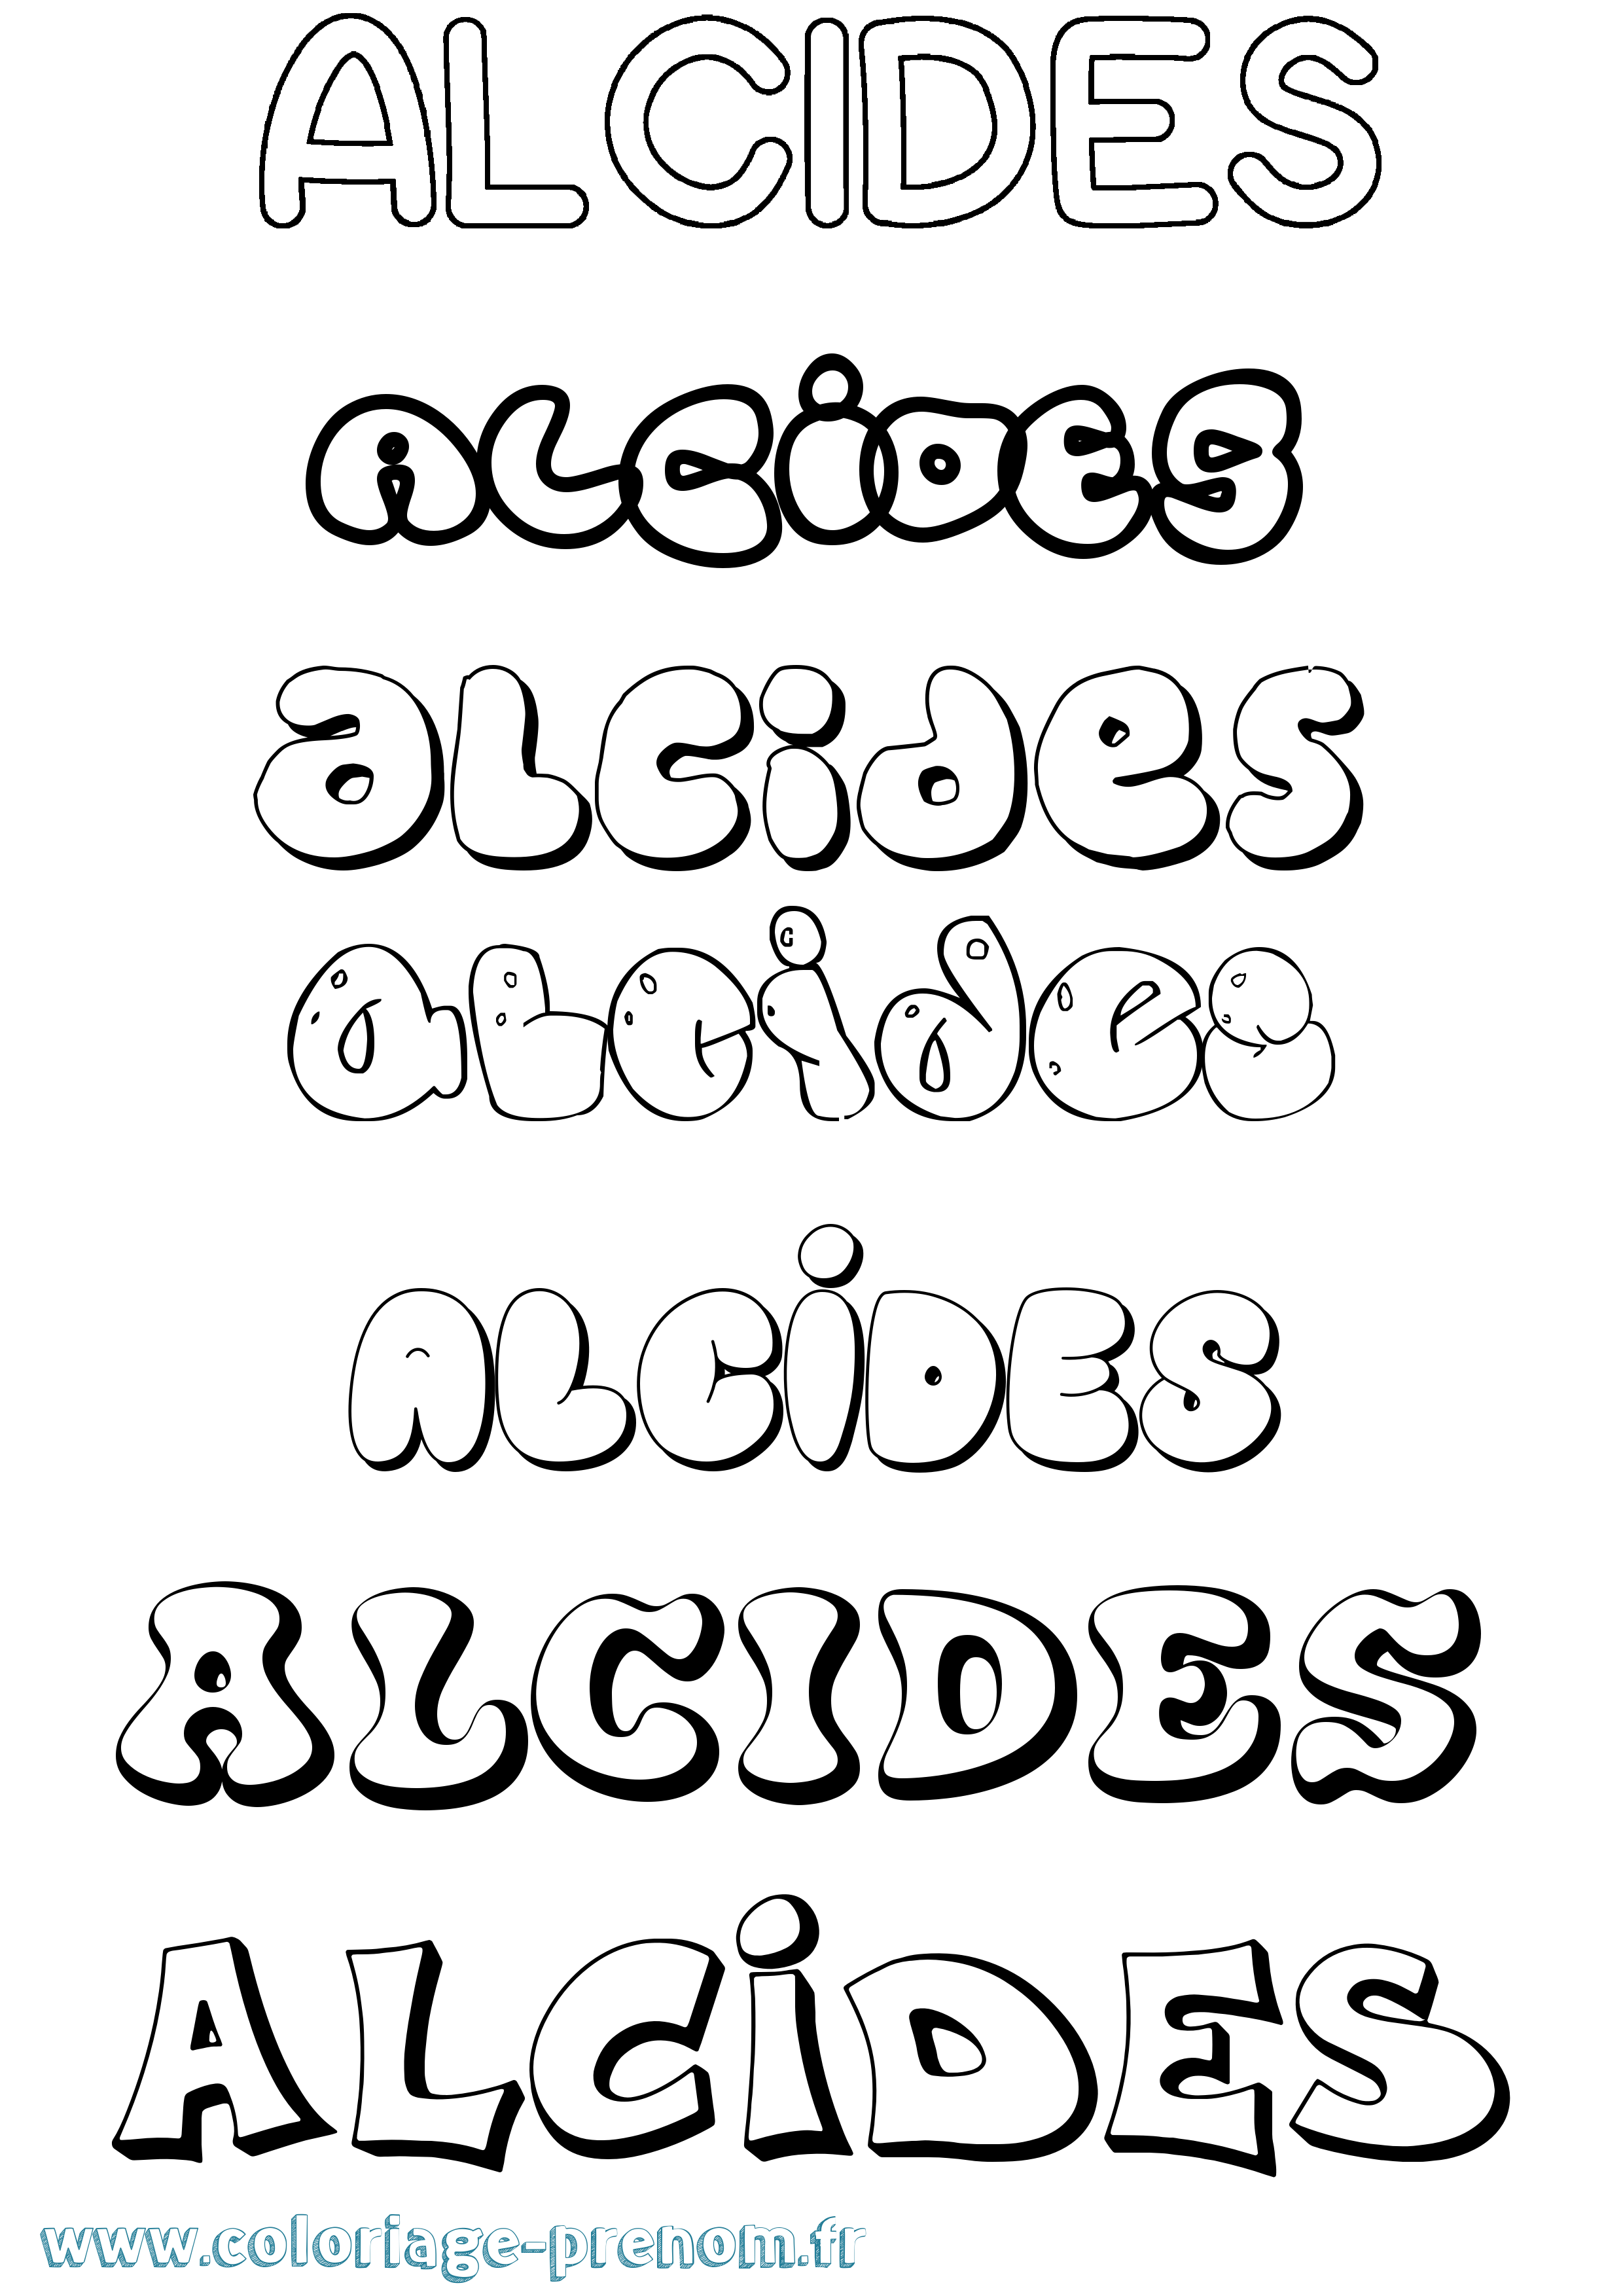 Coloriage prénom Alcides Bubble